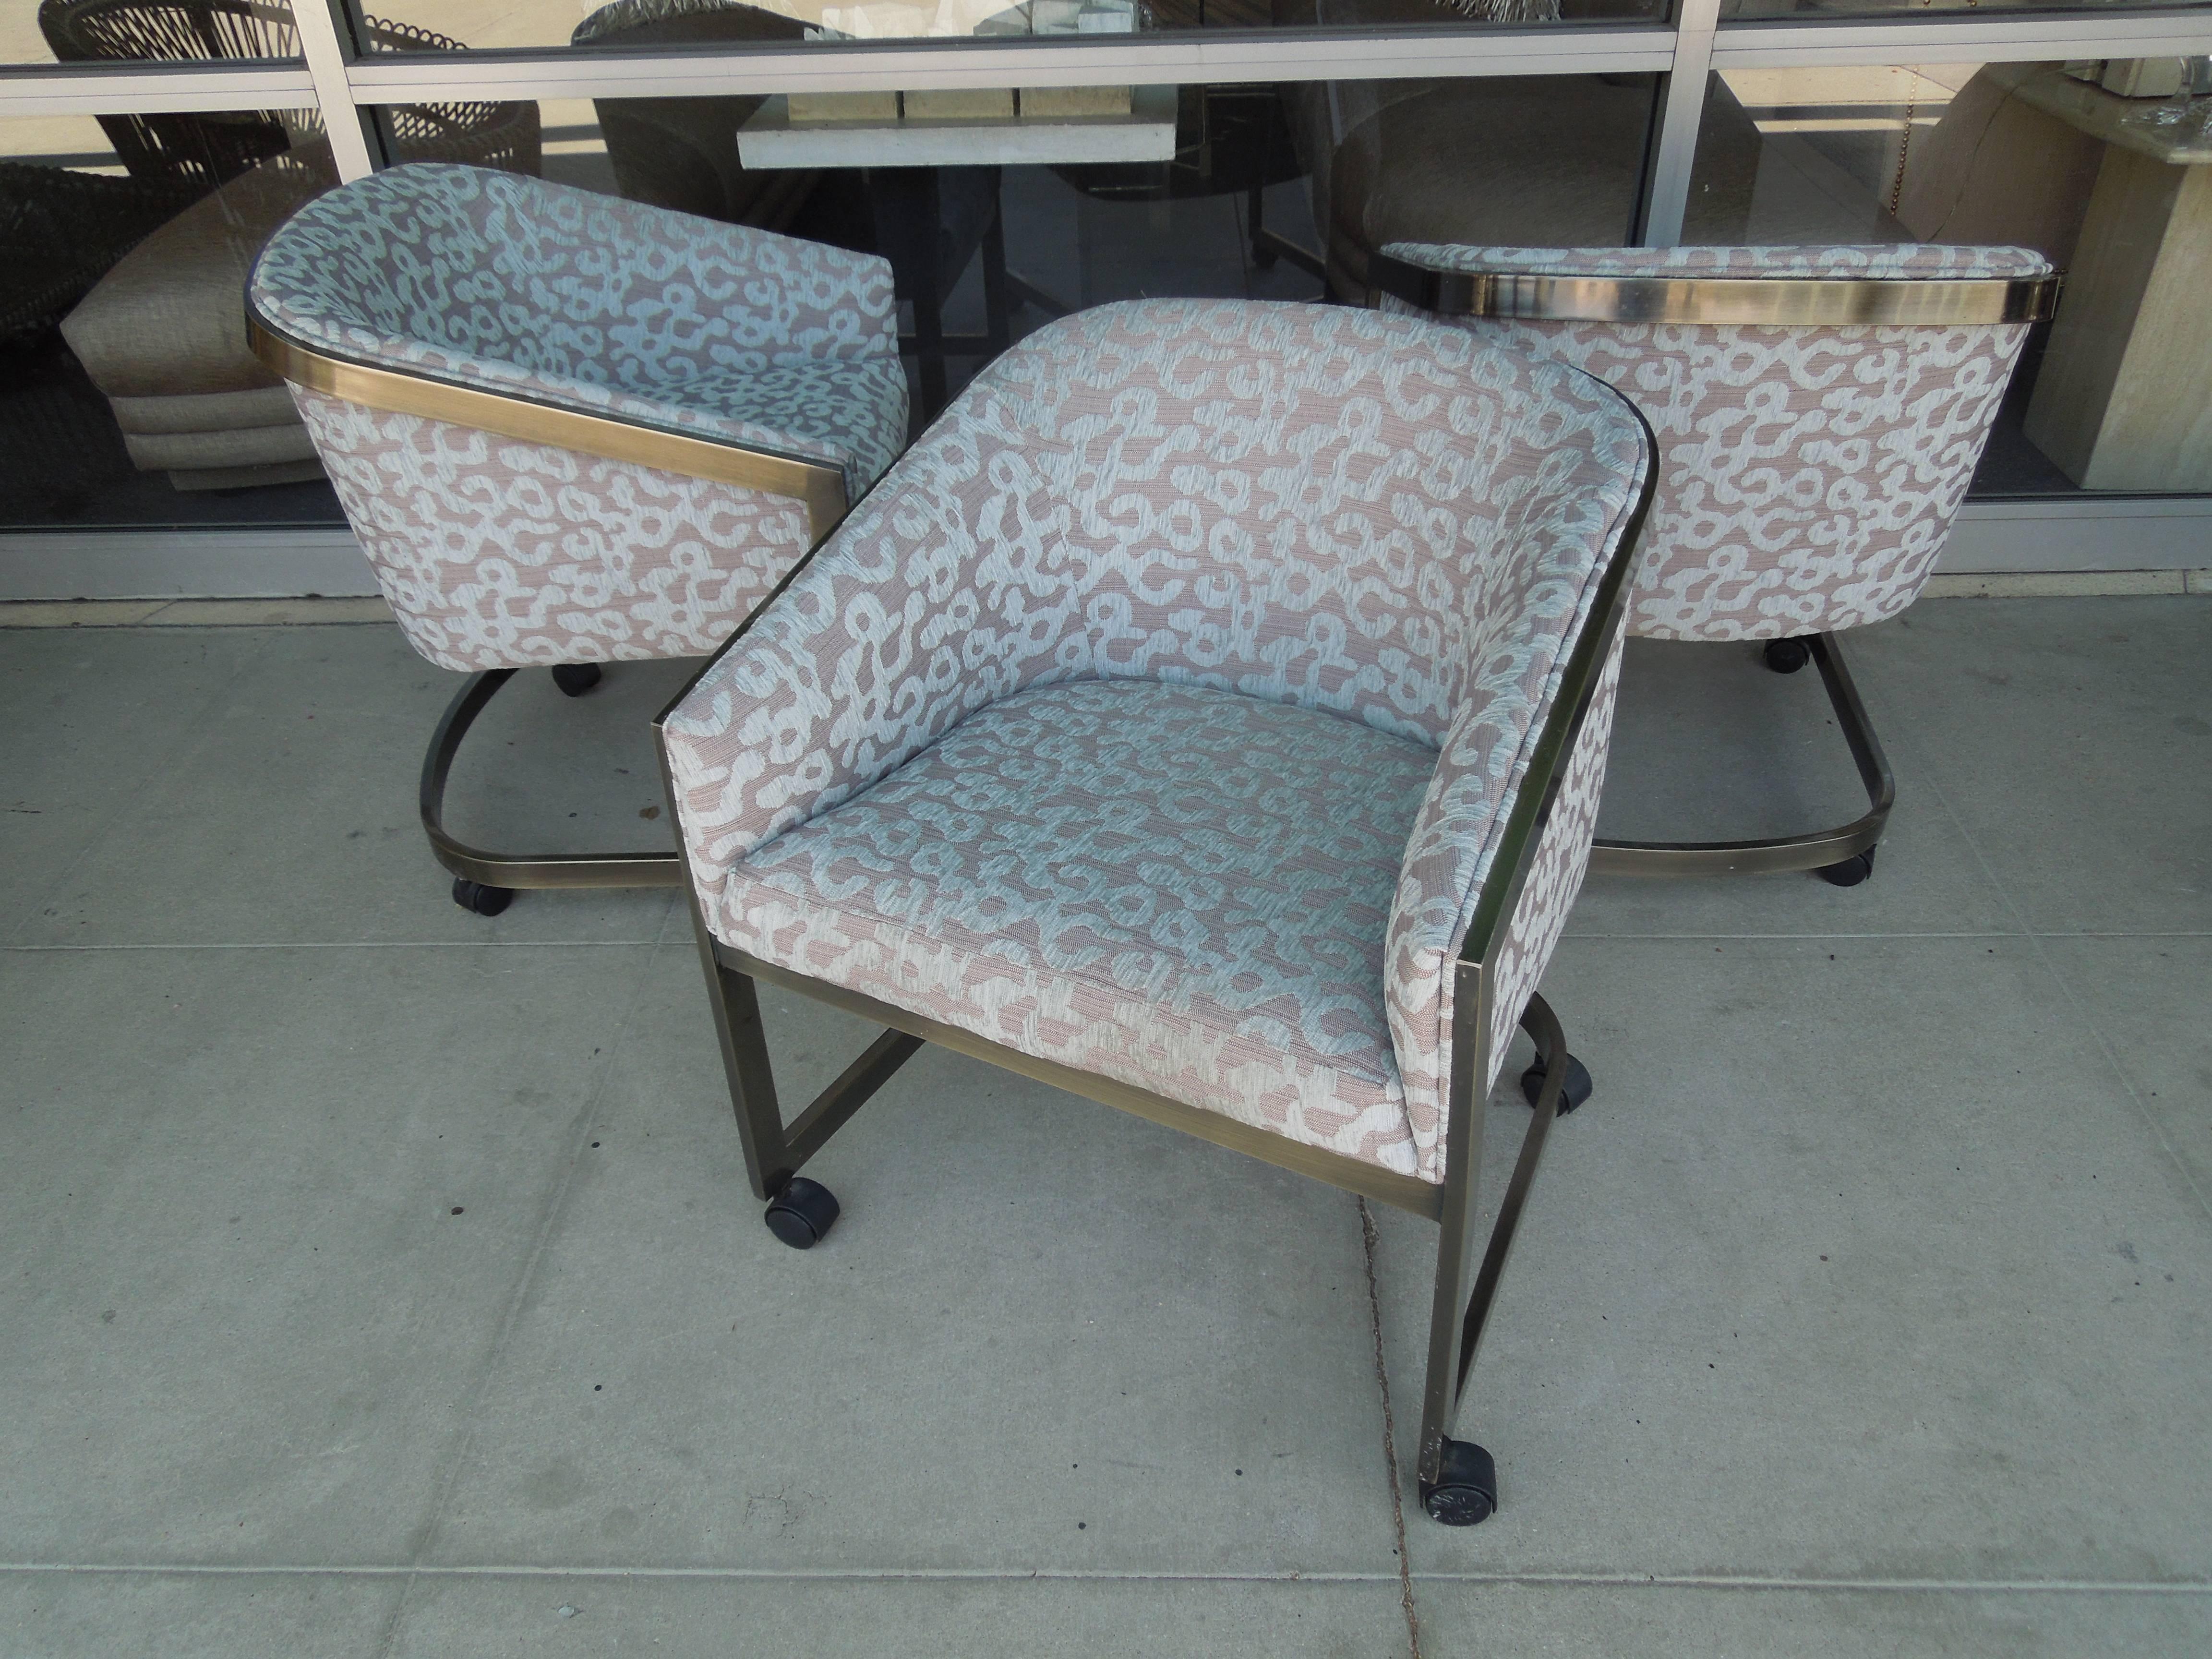 Ein superschickes Set aus drei bronzefarbenen Eimerstühlen auf Rollen vom Design Institute of America. Die Stühle stammen aus einem sehr schicken Vintage-Anwesen in Palm Springs und wurden mit einem hochwertigen europäischen Jacquard mit modernem